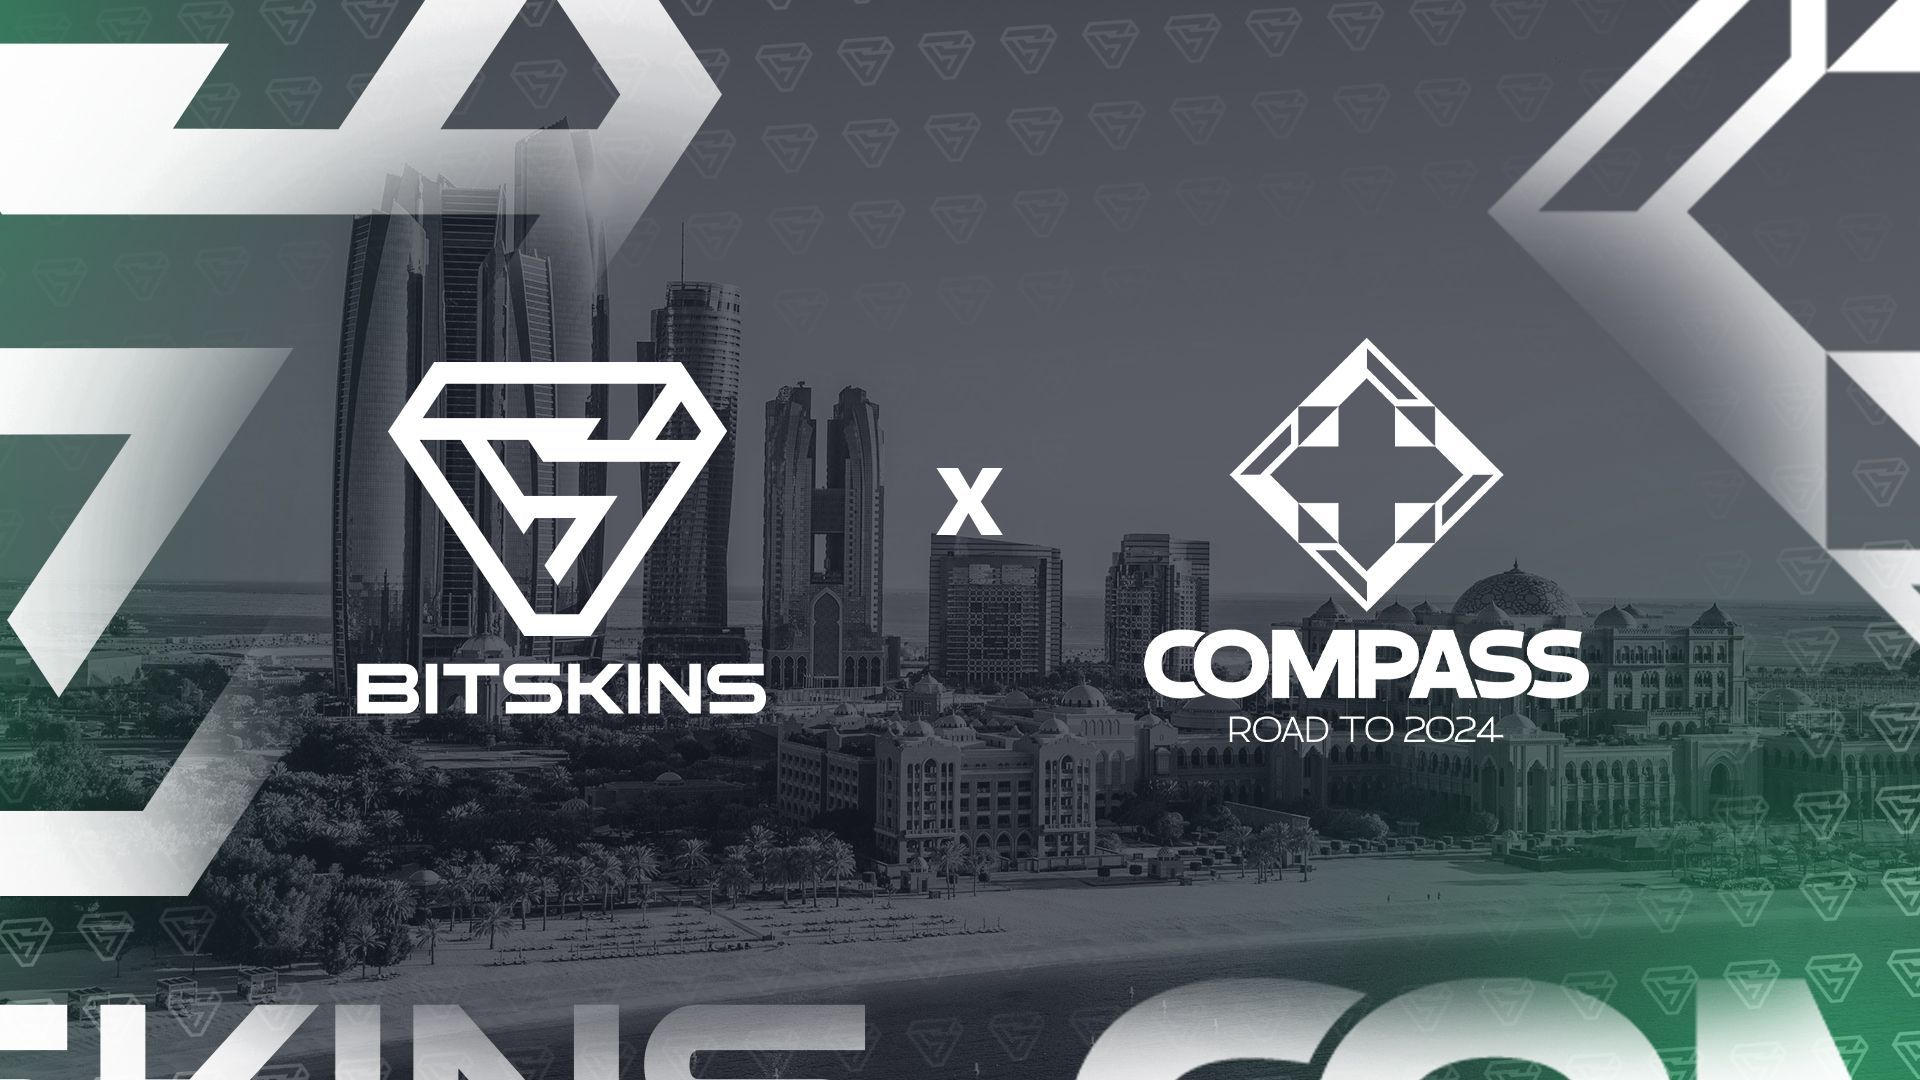 [PL] BitSkins wspiera YaLLa Esports z okazji "Compass"